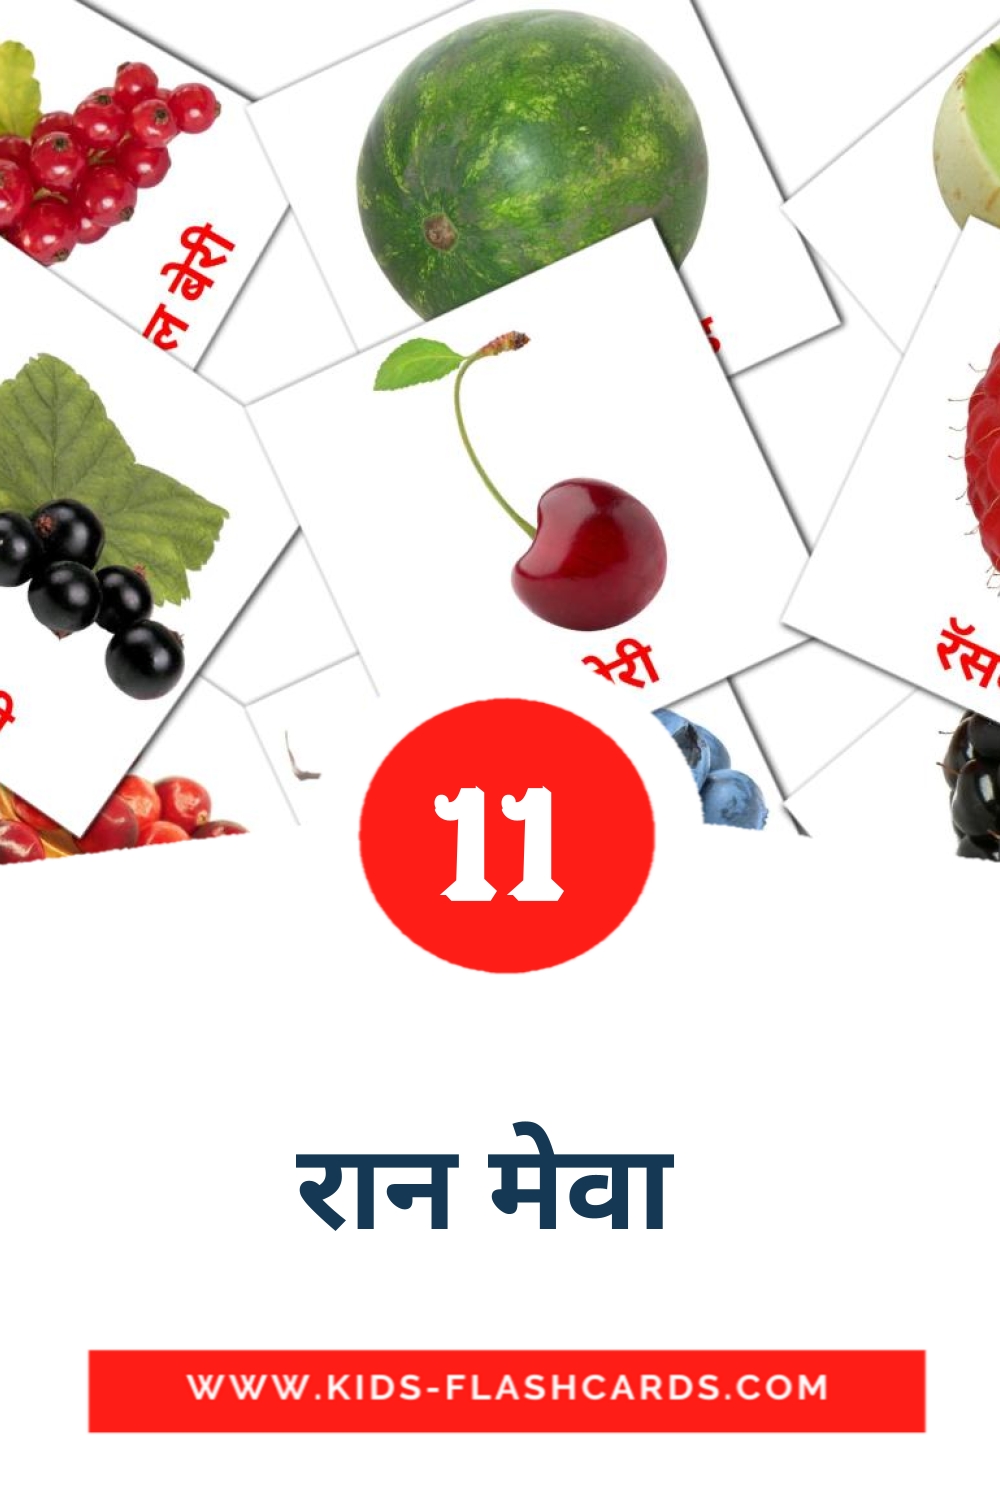 11 रान मेवा  fotokaarten voor kleuters in het marathi